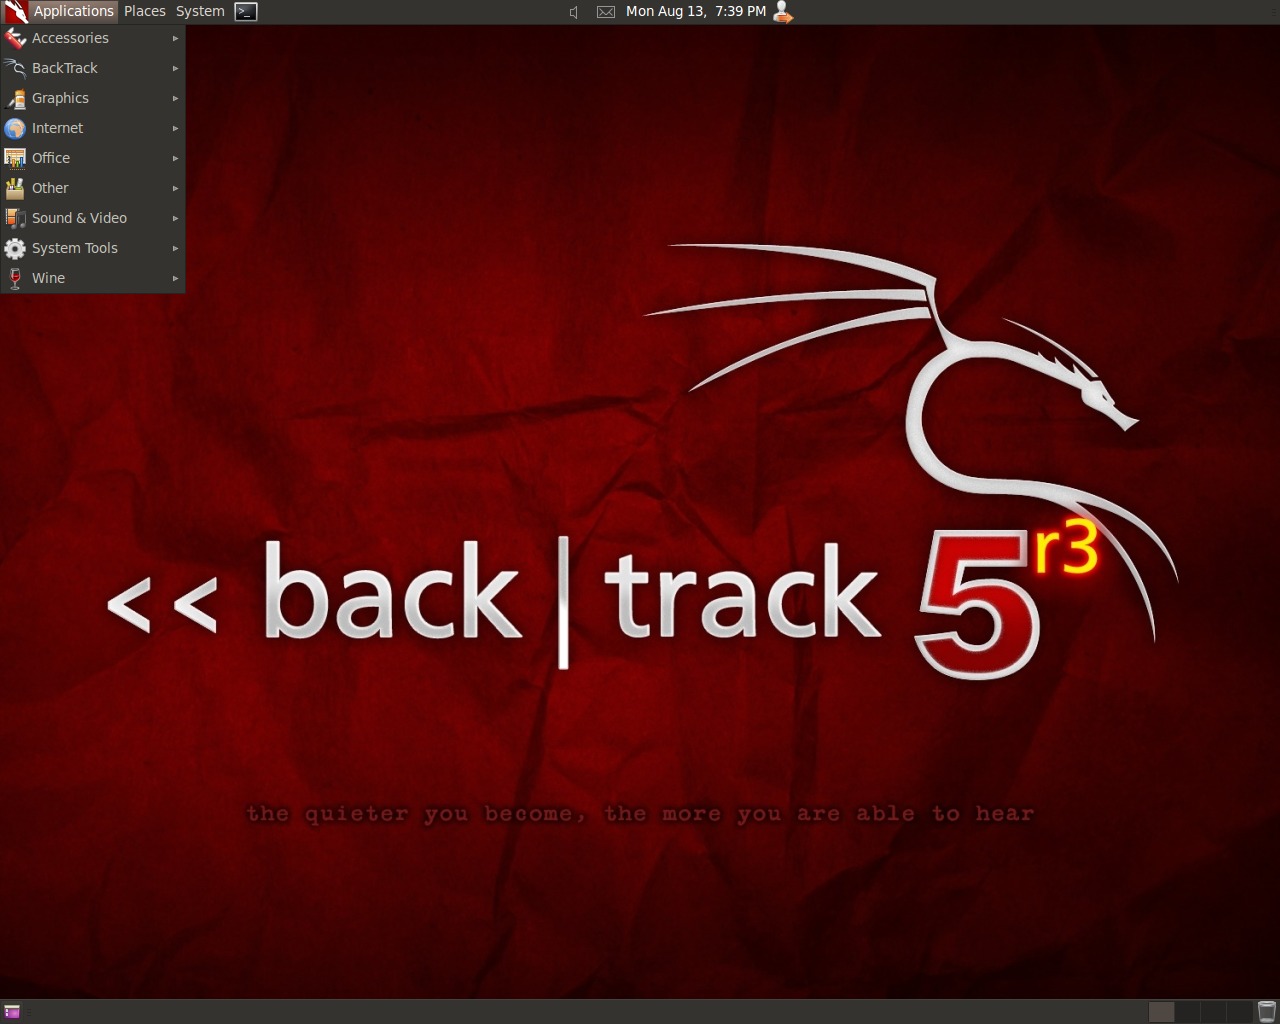 backtrack-5-r3.jpg BackTrack 5 R3, Gnome, 32bit torrent